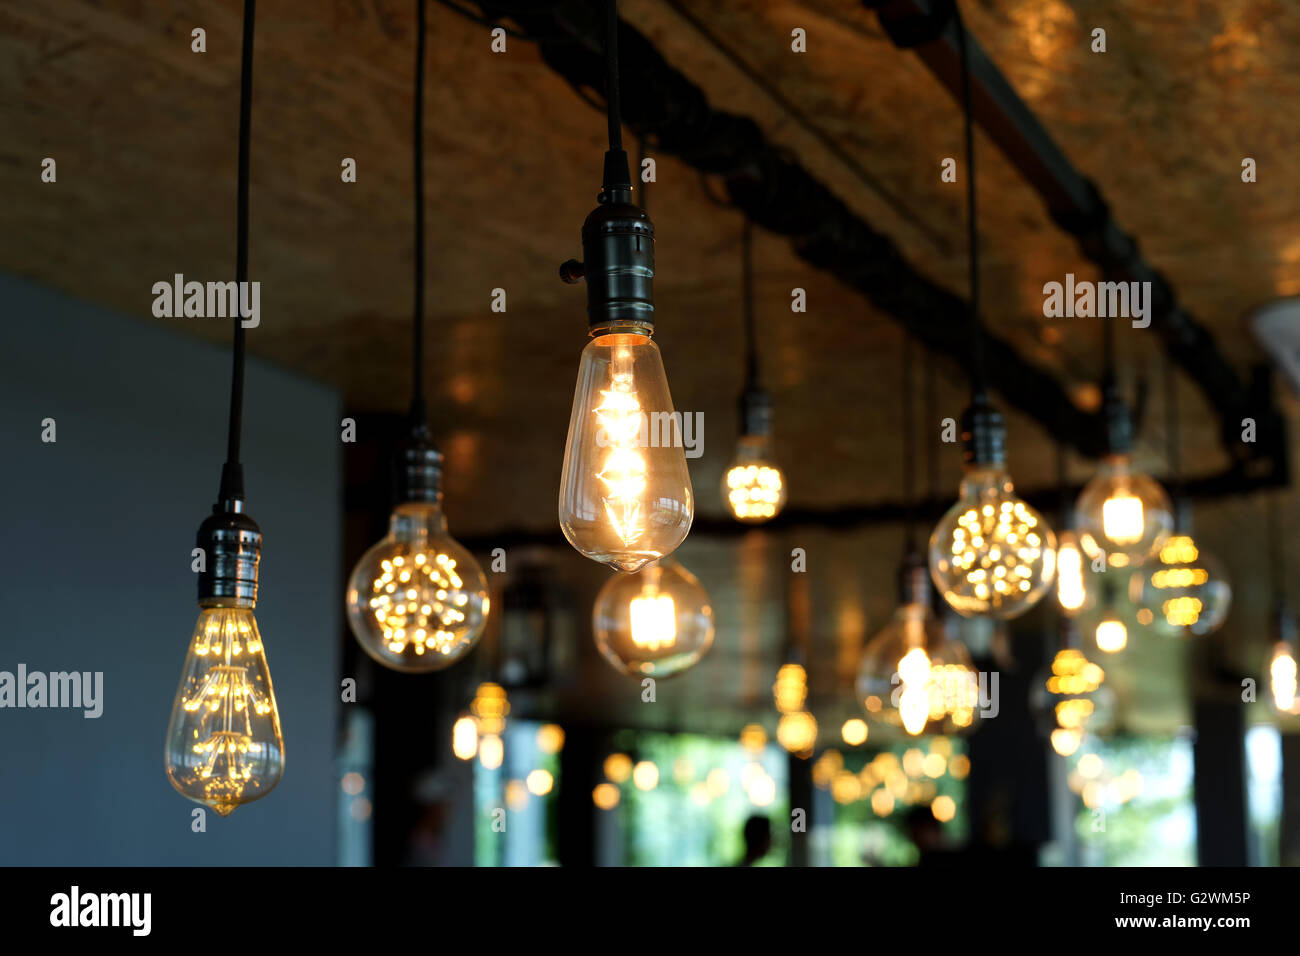 Ampoules tungstène antique décoratif accroché au plafond Banque D'Images